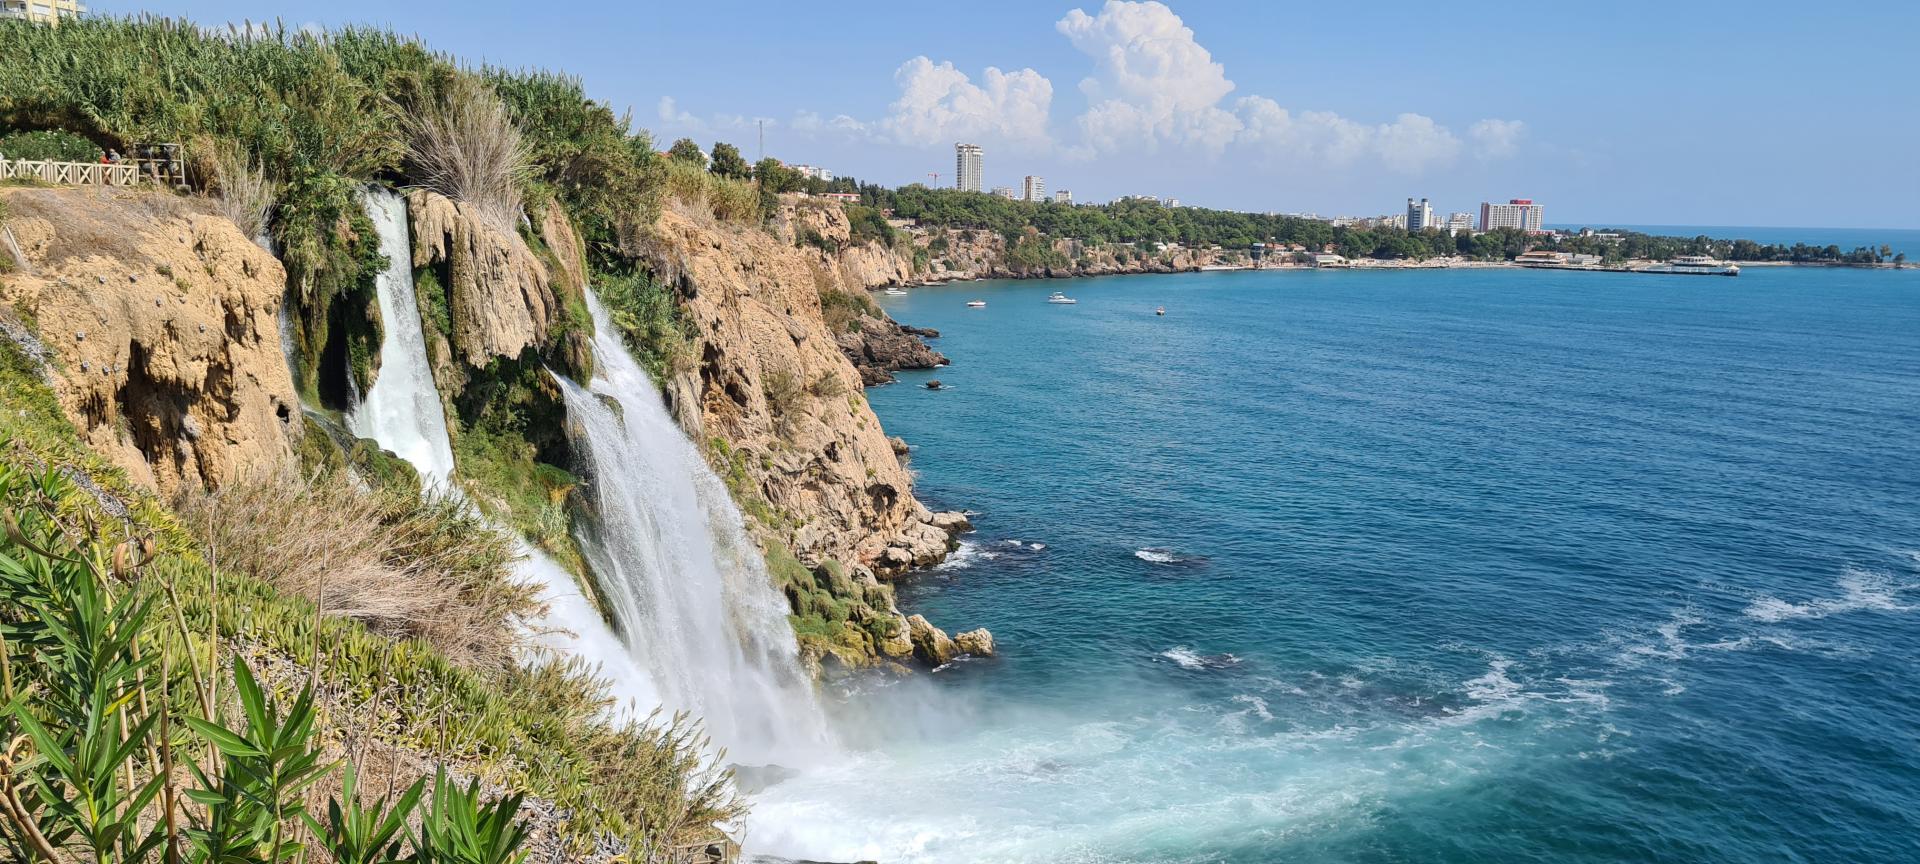 Antalya Waterfall